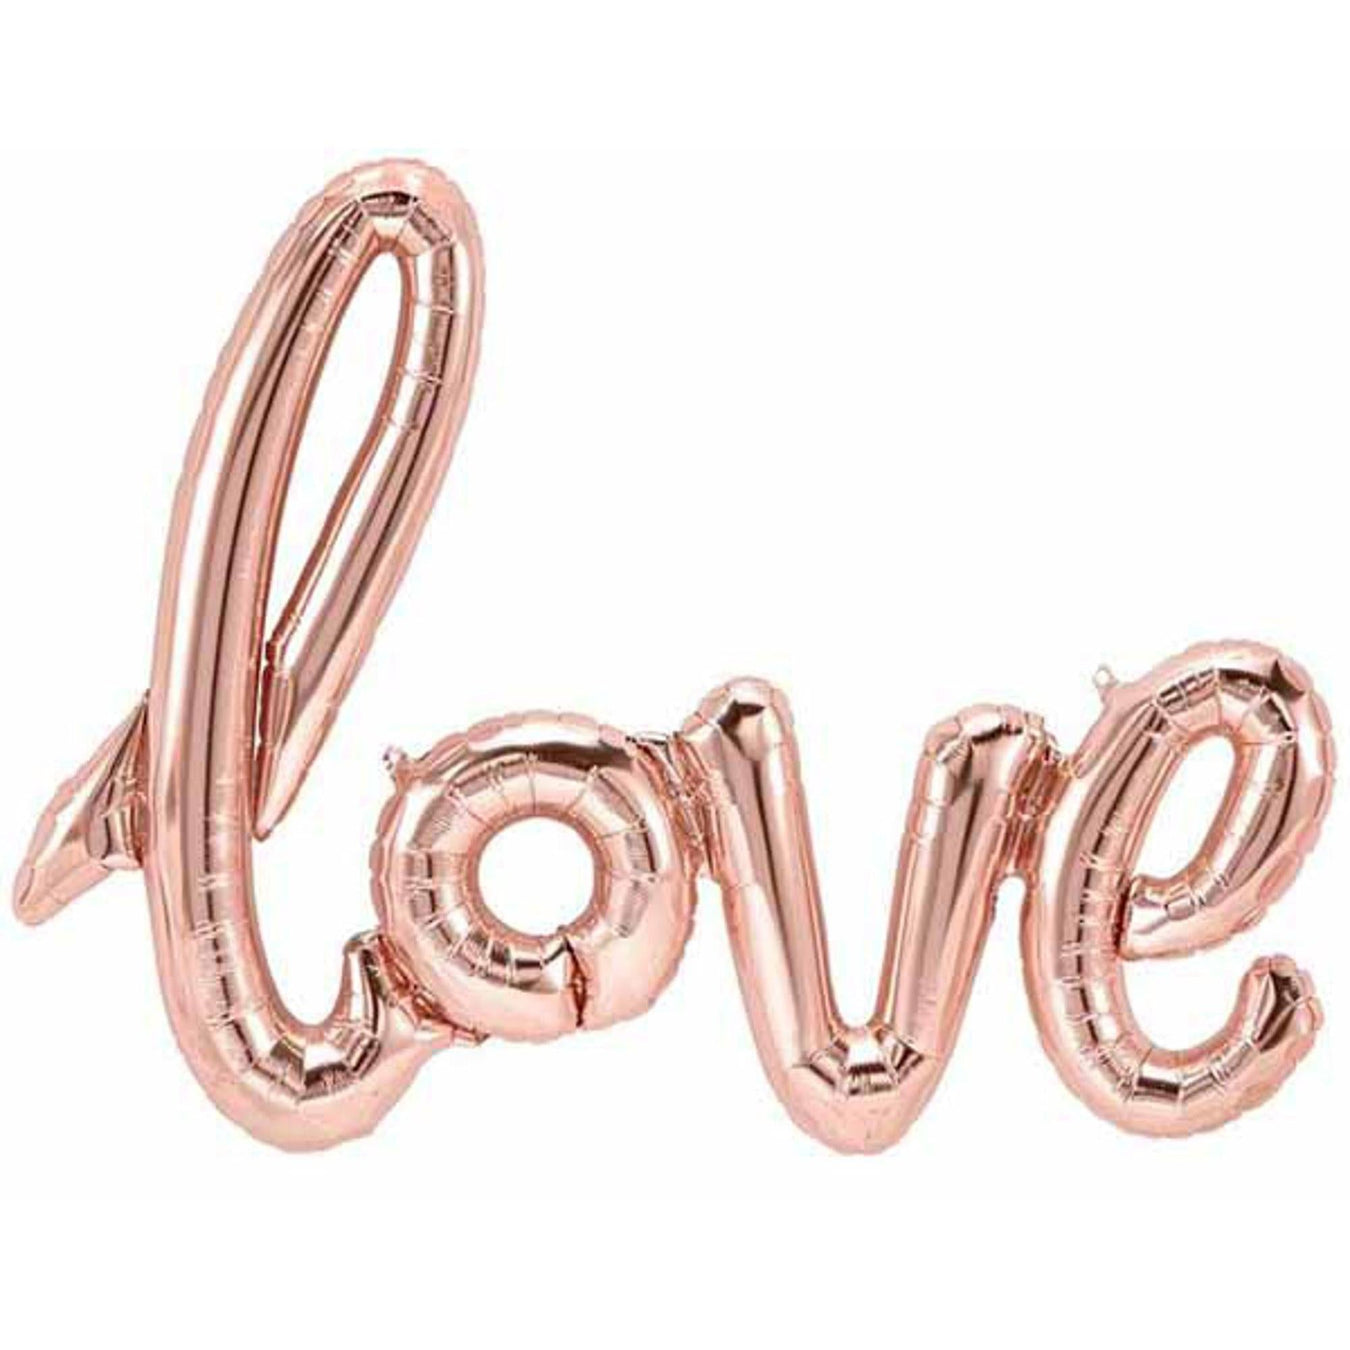 "Love" Script Letter Balloons